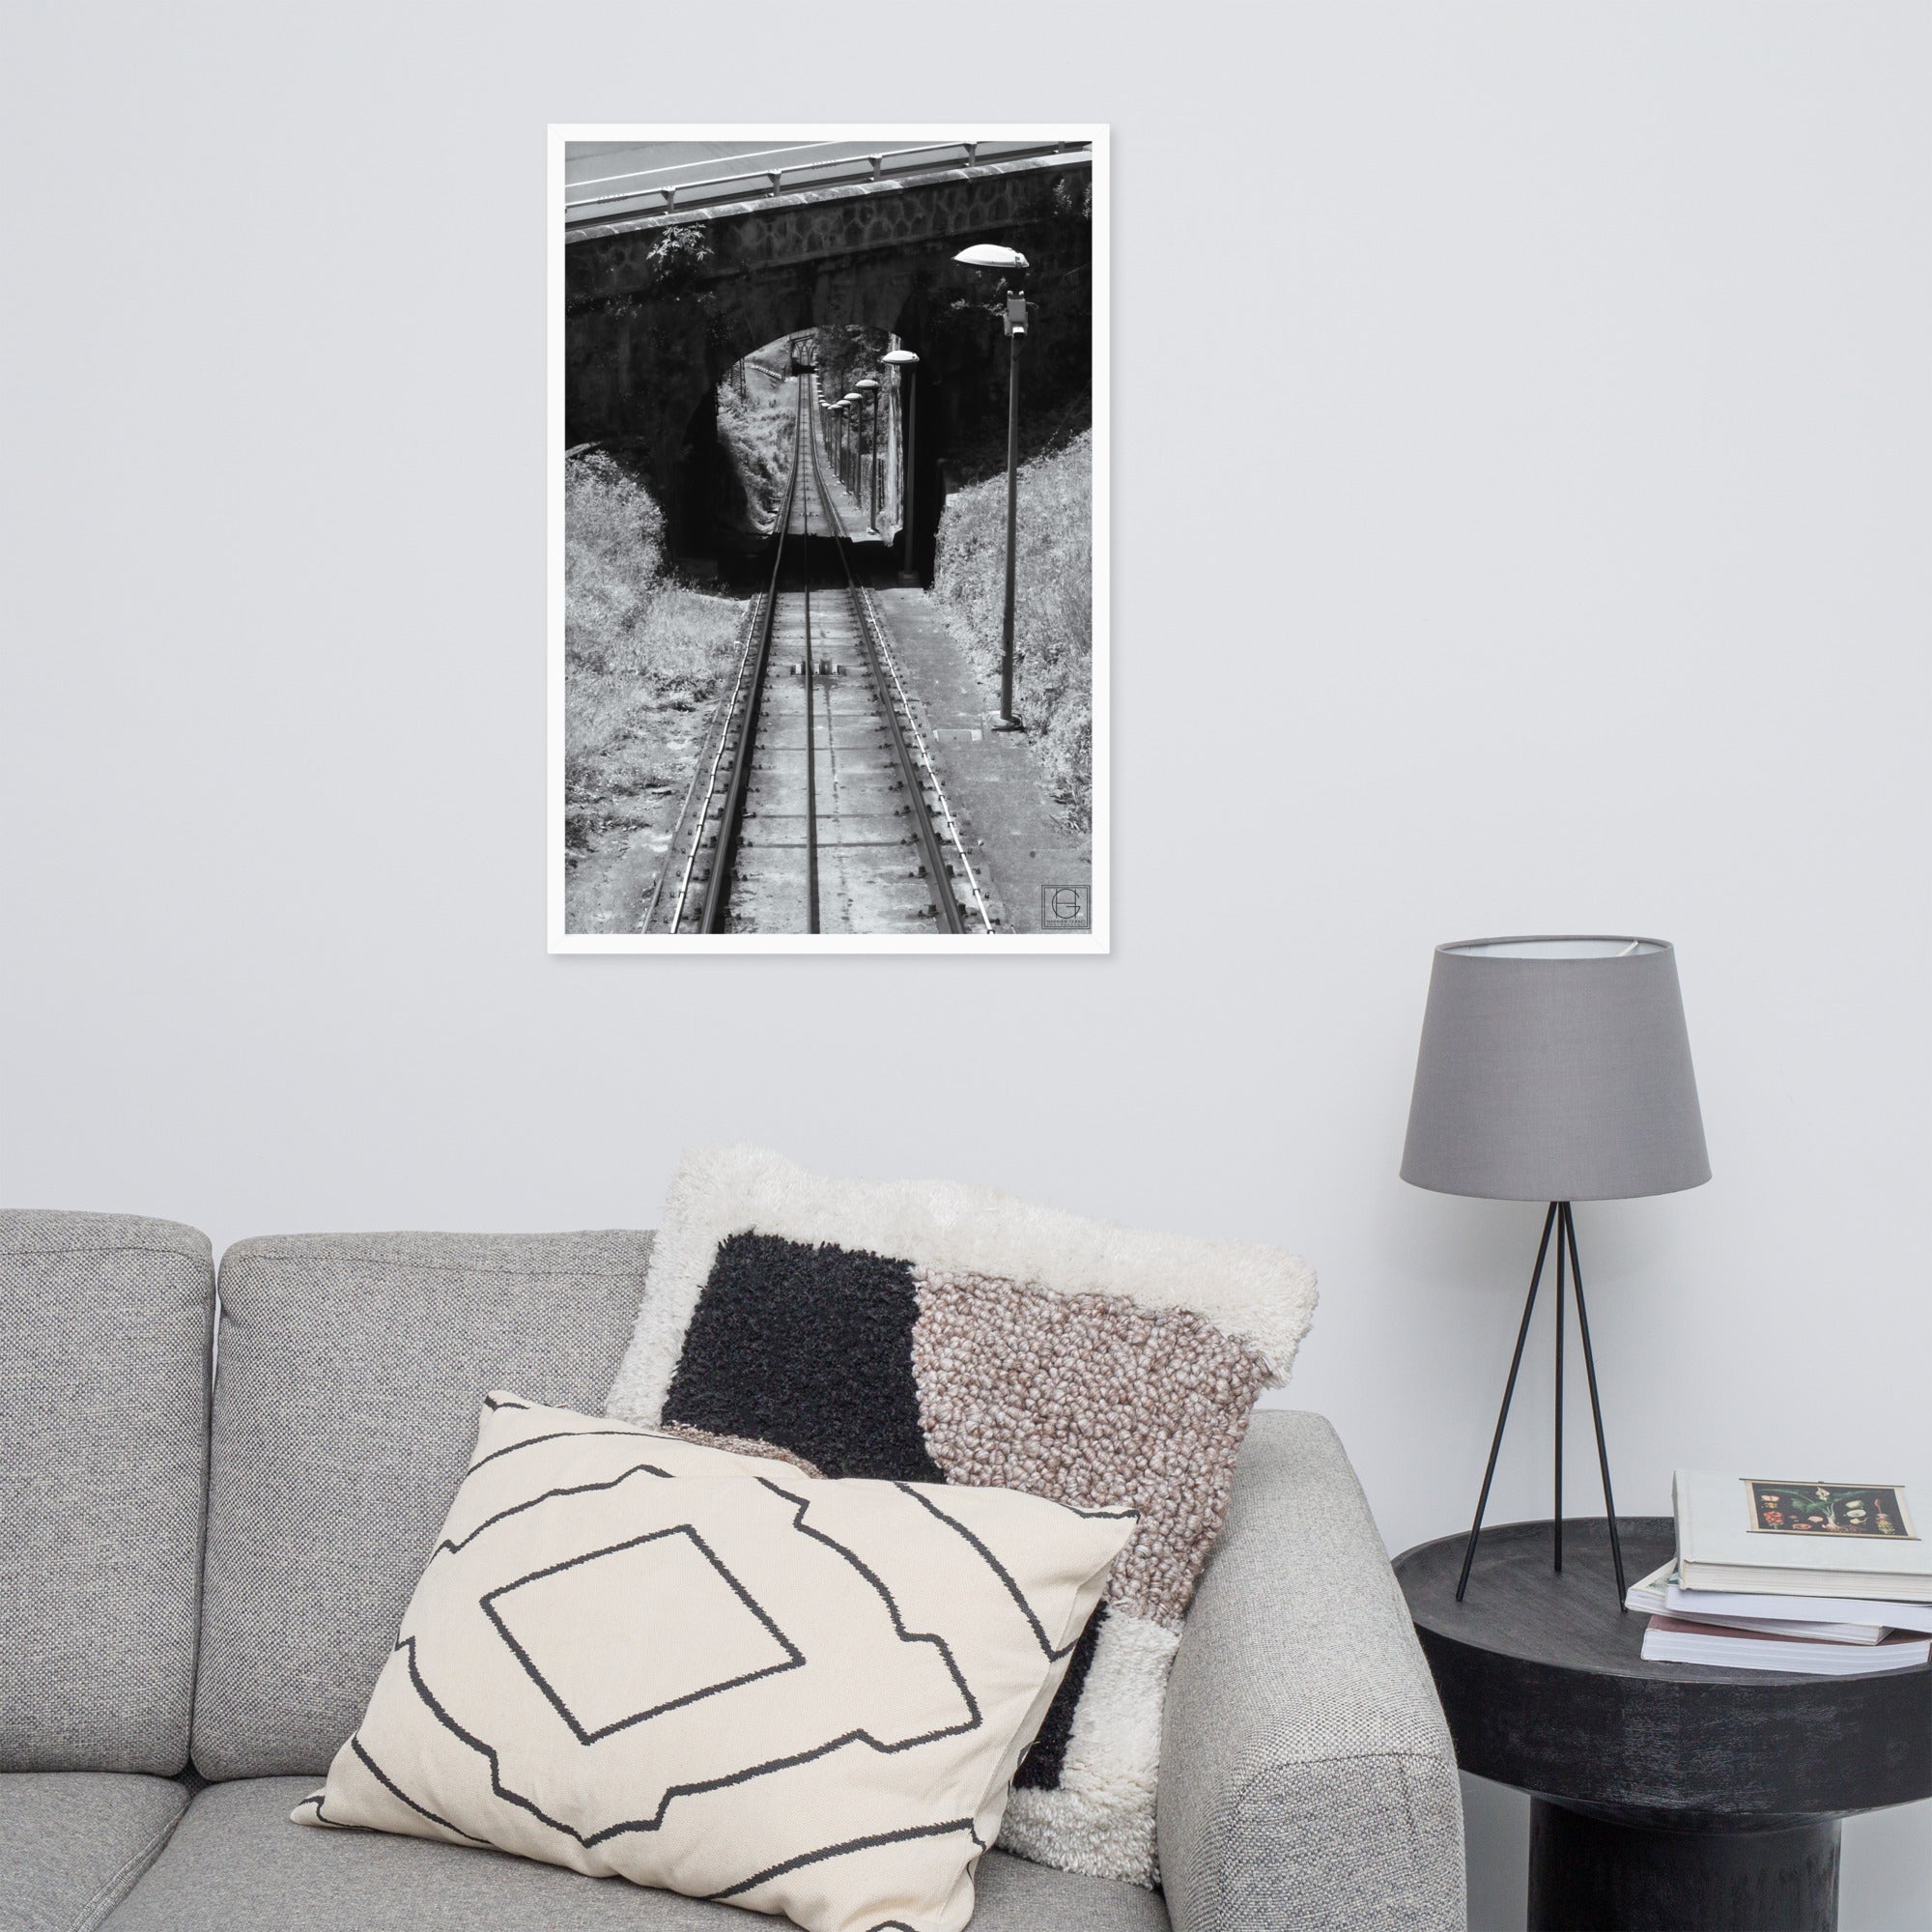 Photographie encadrée 'La Descente' par Hadrien Geraci, montrant une vue plongeante sur les rails du funiculaire Artxanda, impression de qualité musée sur papier mat épais.